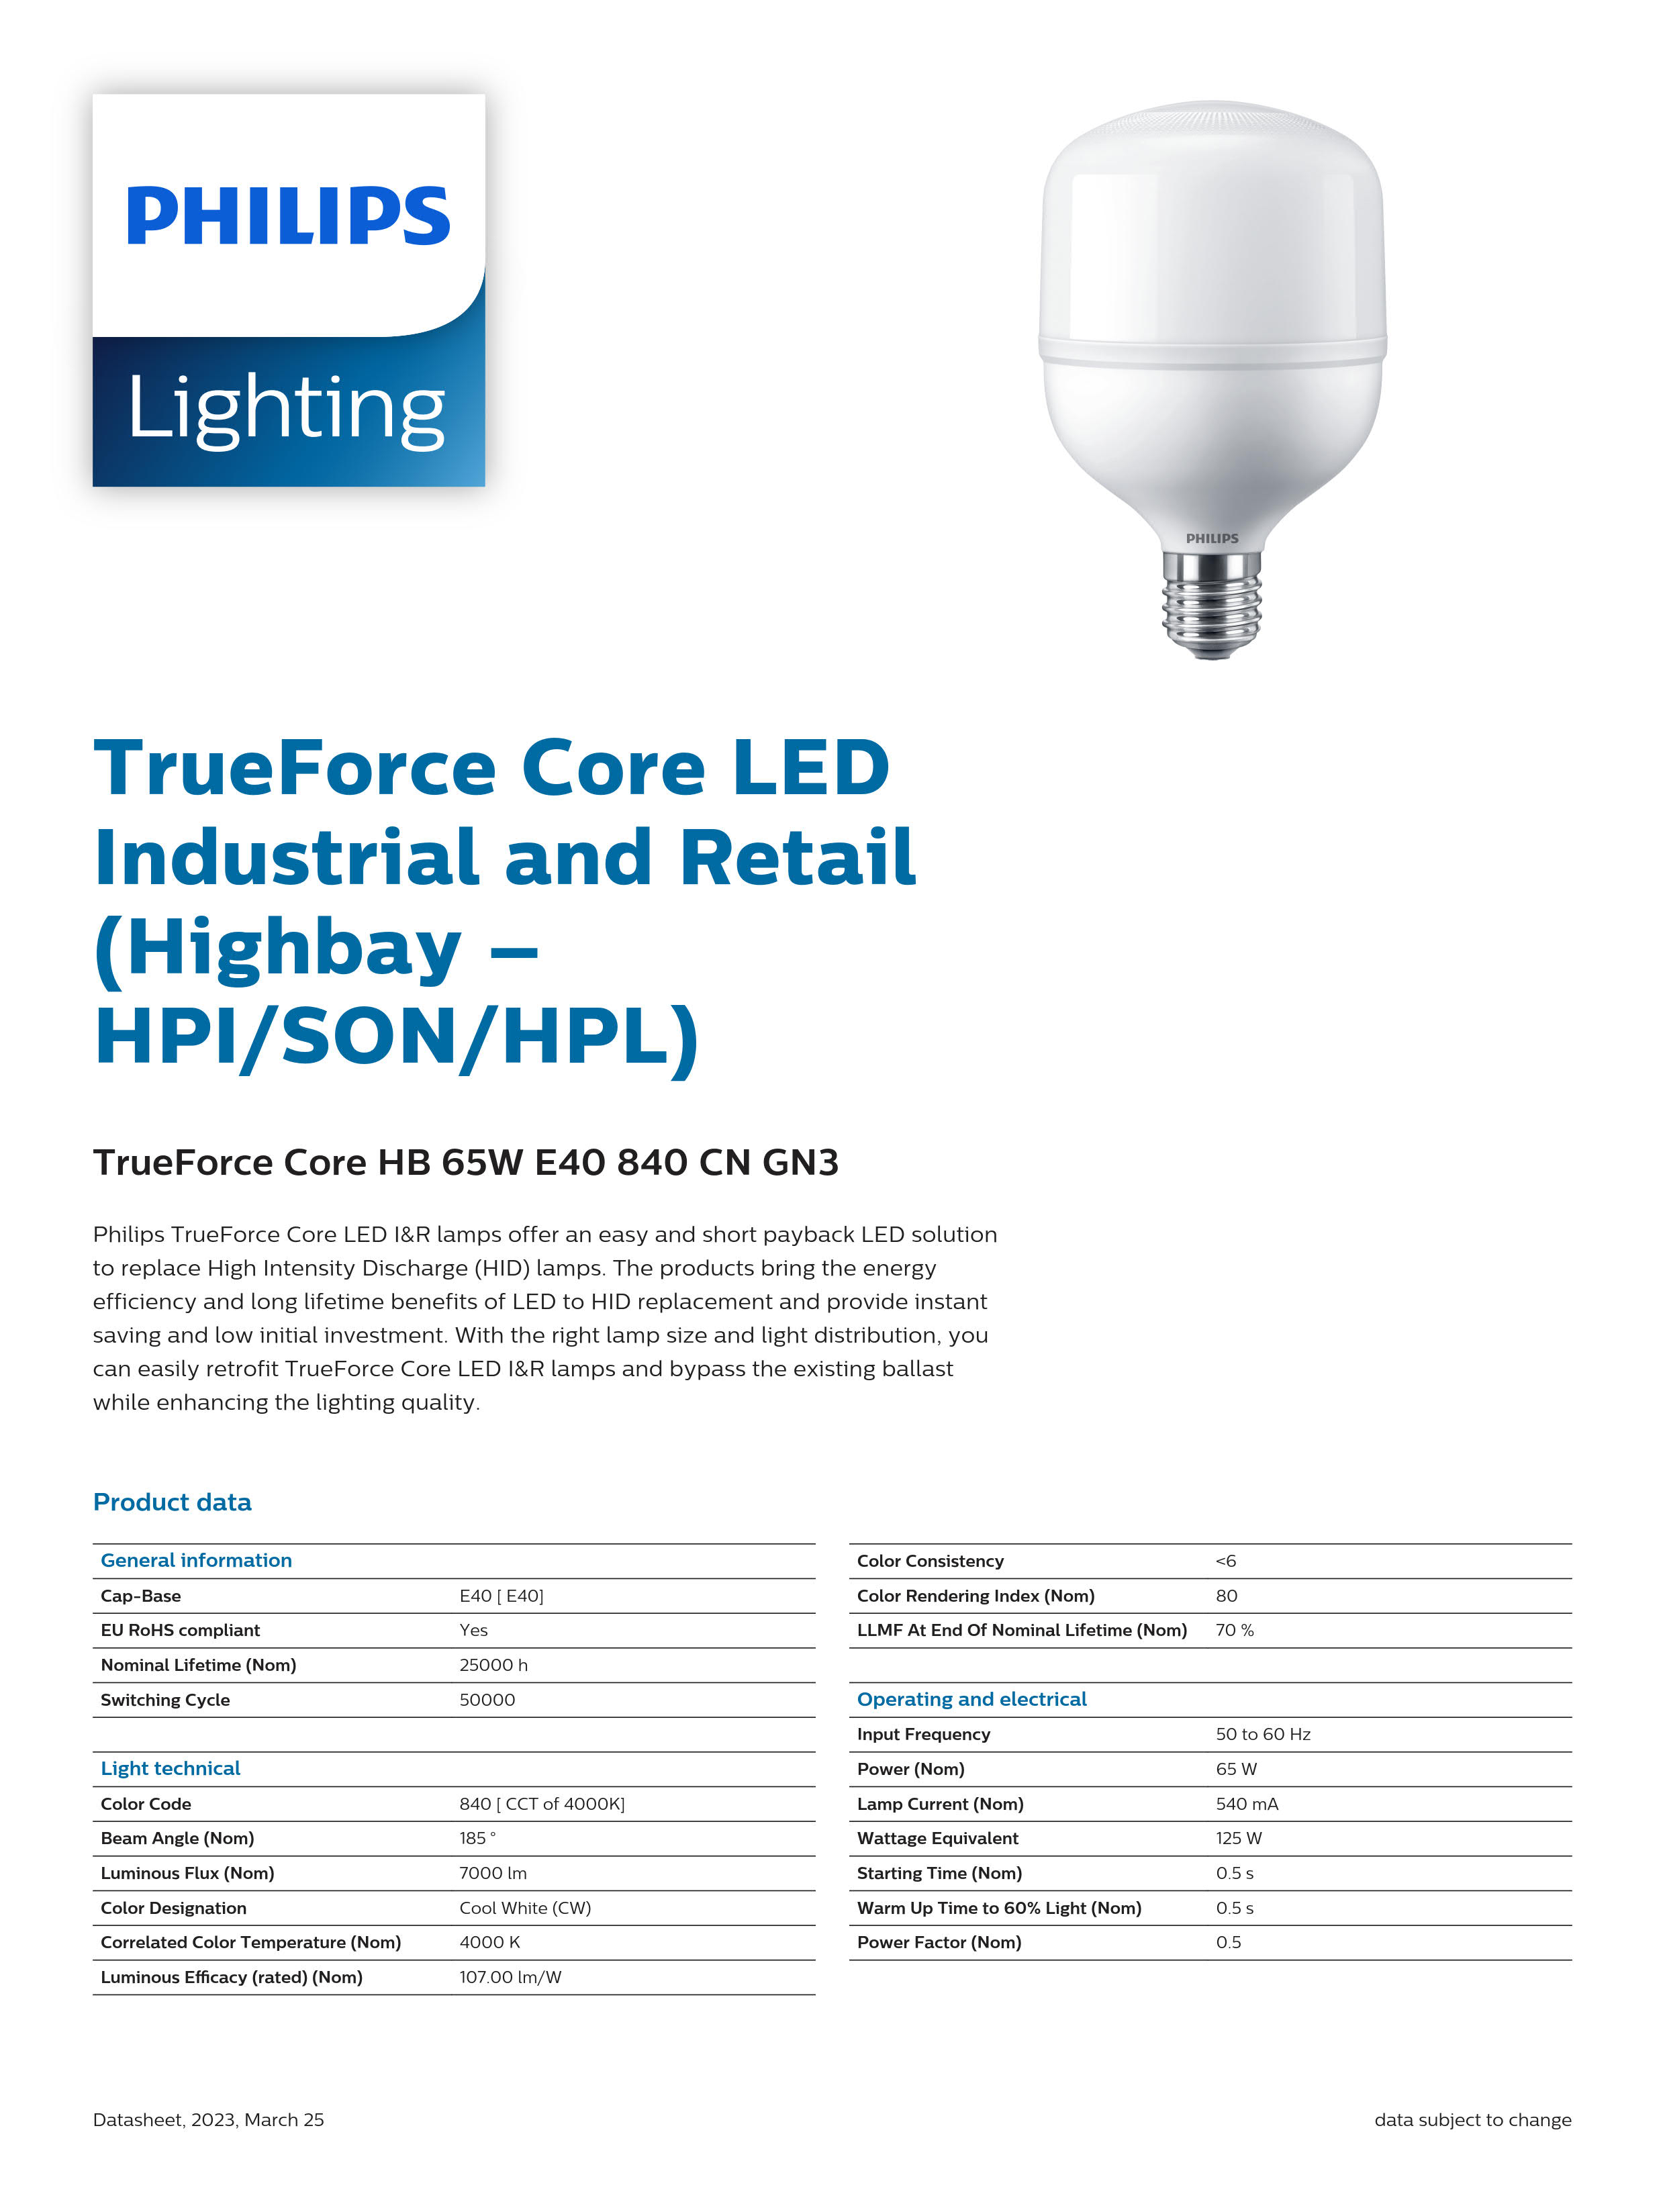 PHILIPS LED Bulb TrueForce Core HB 65W E40 840 CN GN3 929002409010